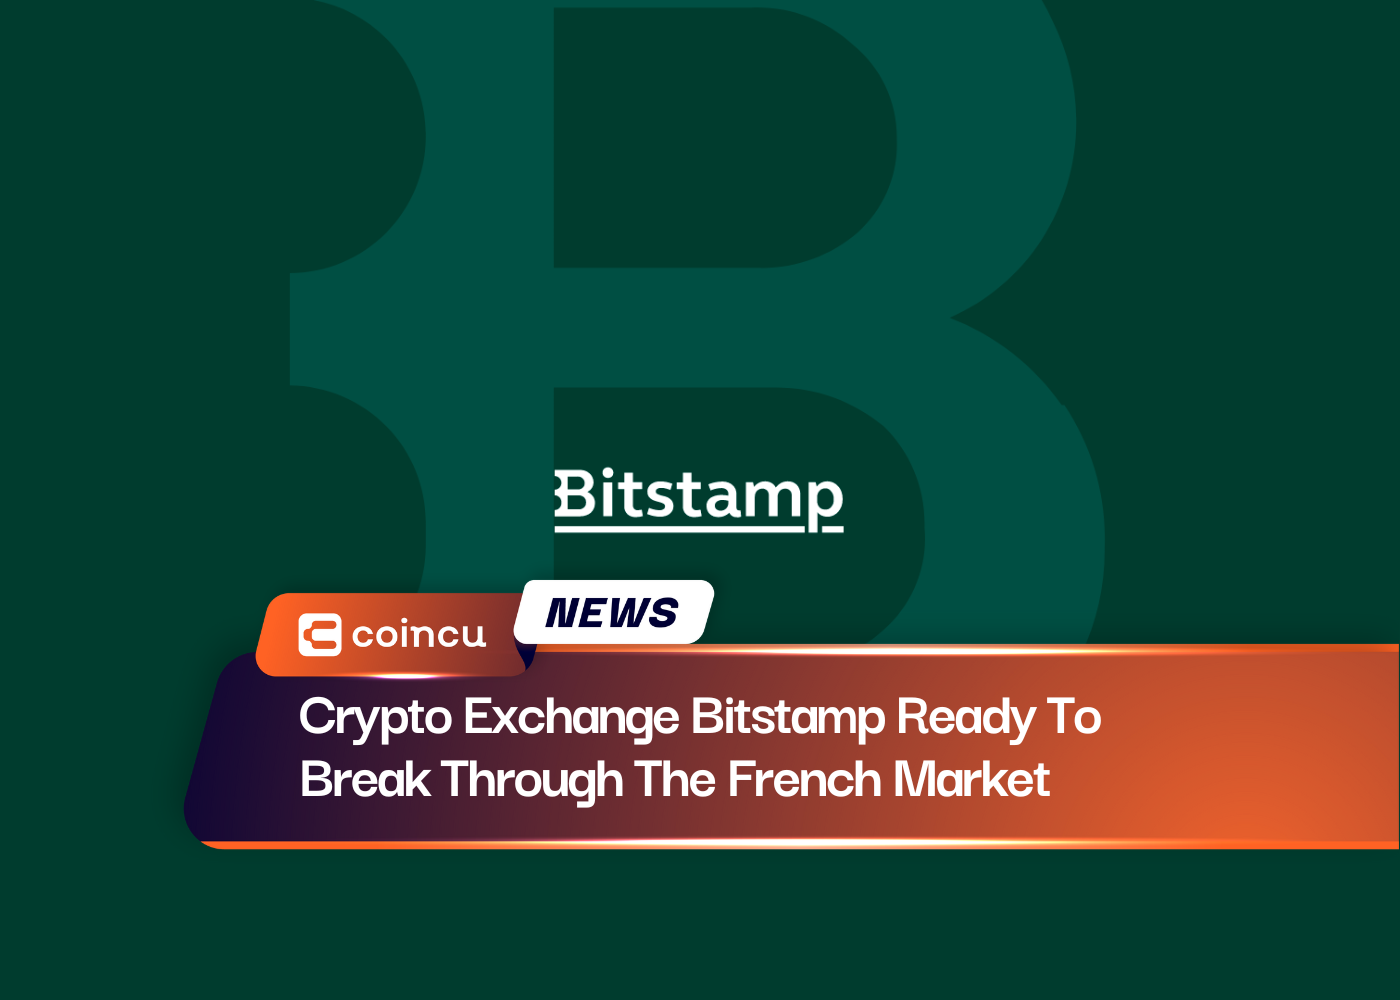 프랑스 시장을 돌파할 준비가 된 암호화 교환 비트스탬프